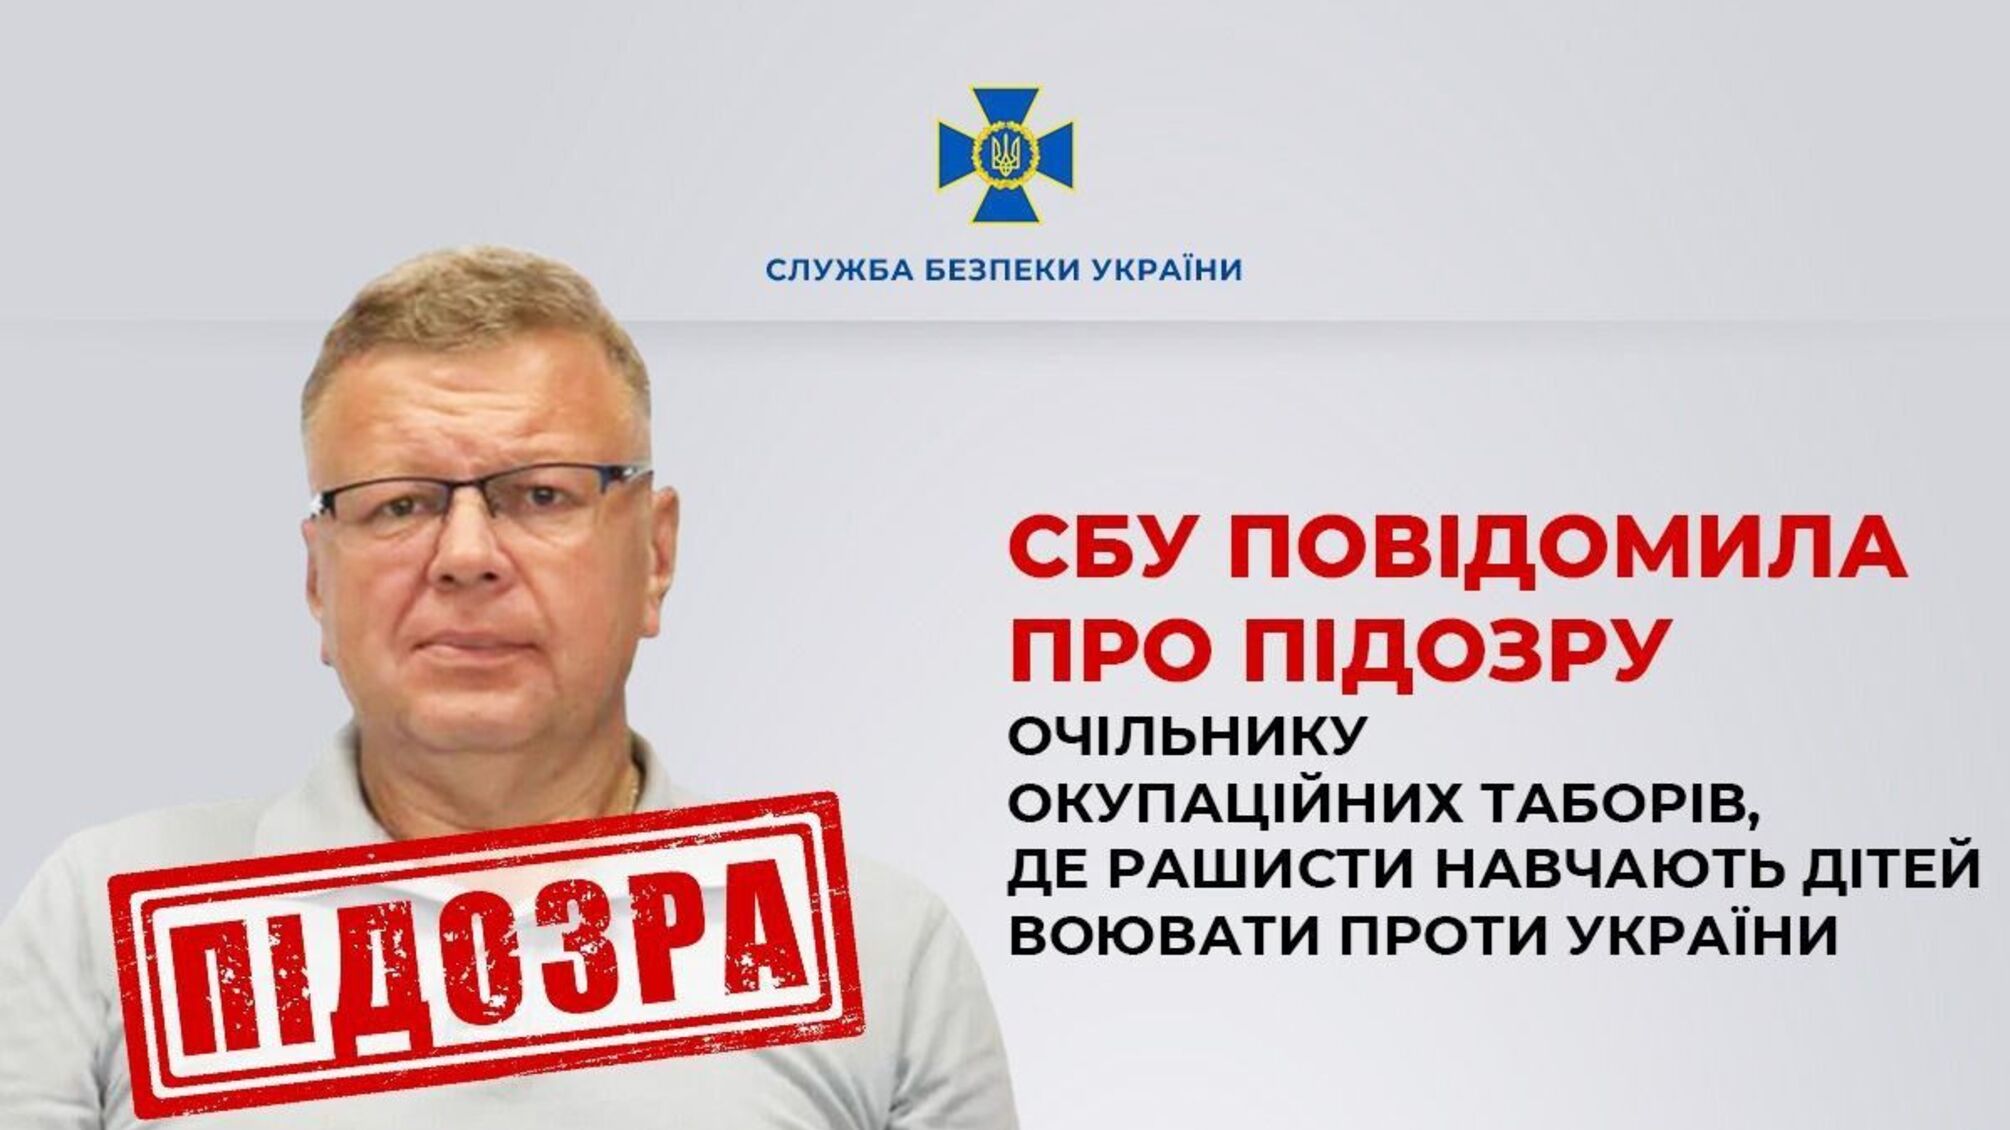 СБУ повідомила про підозру очільнику окупаційних таборів, де окупанти навчають дітей воювати проти України